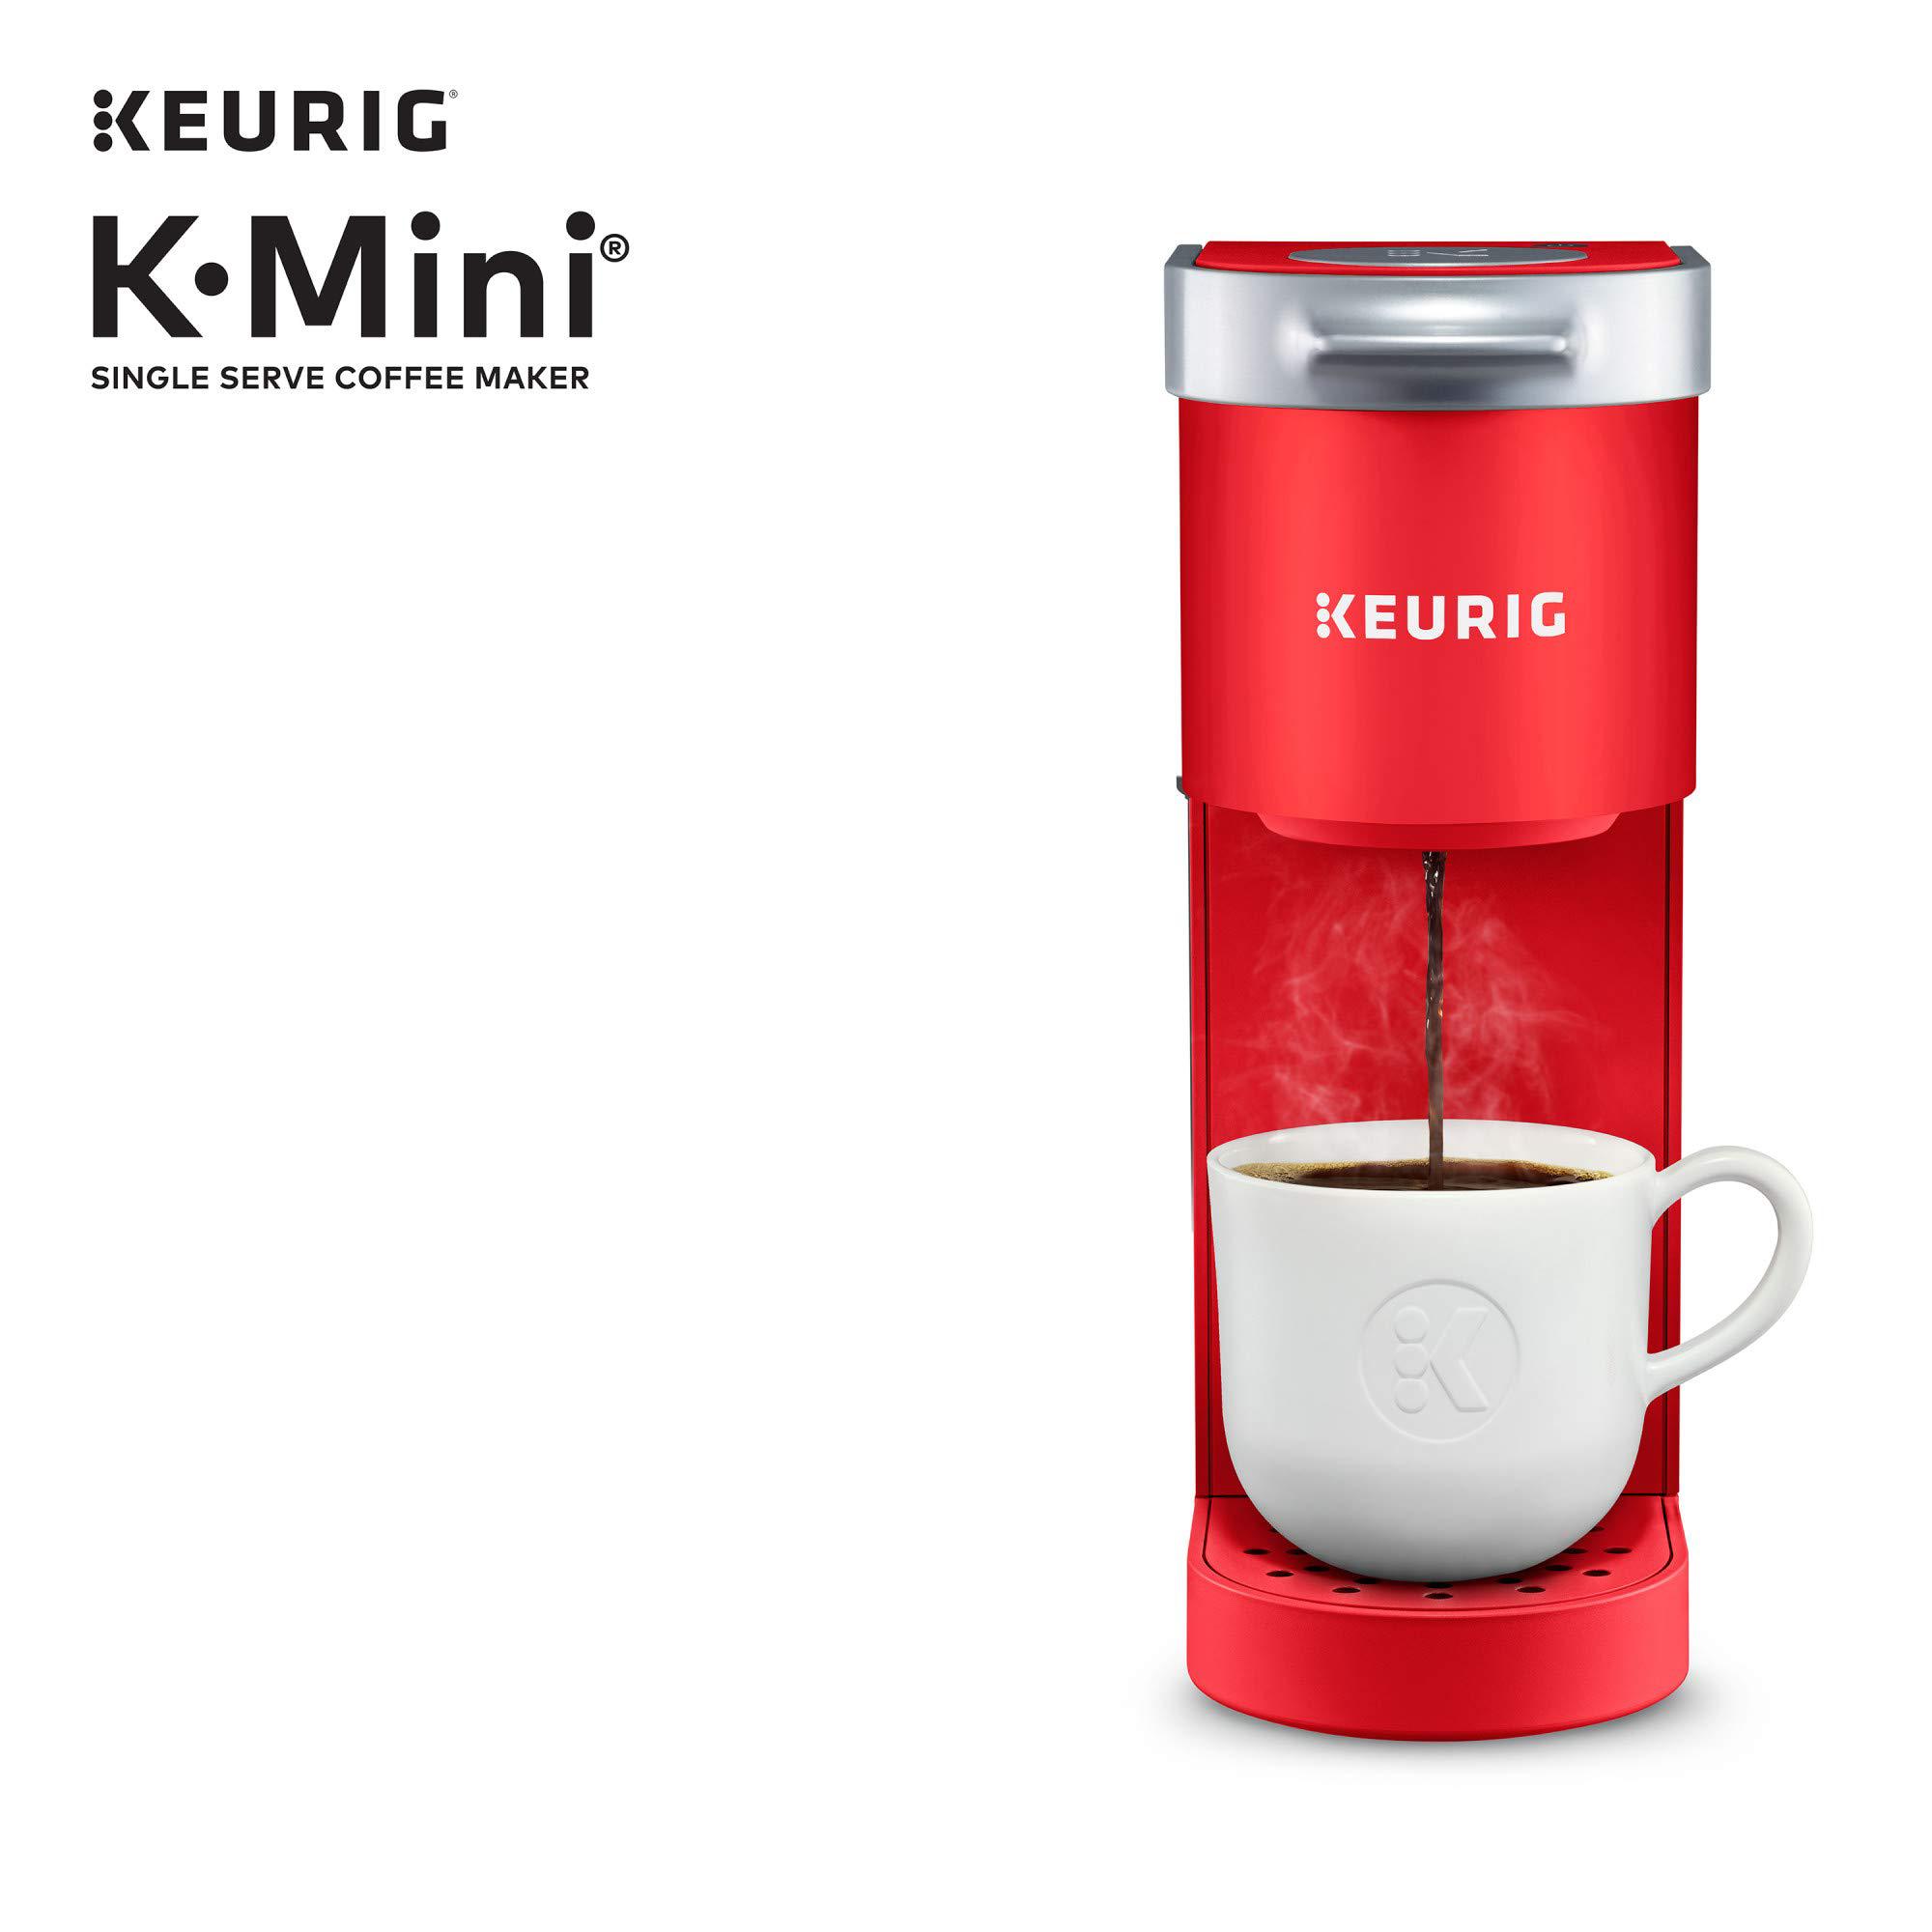 keurig k-mini coffee maker, single serve k-cup pod coffee brewer, 6 to 12 oz. brew sizes, poppy red (renewed)